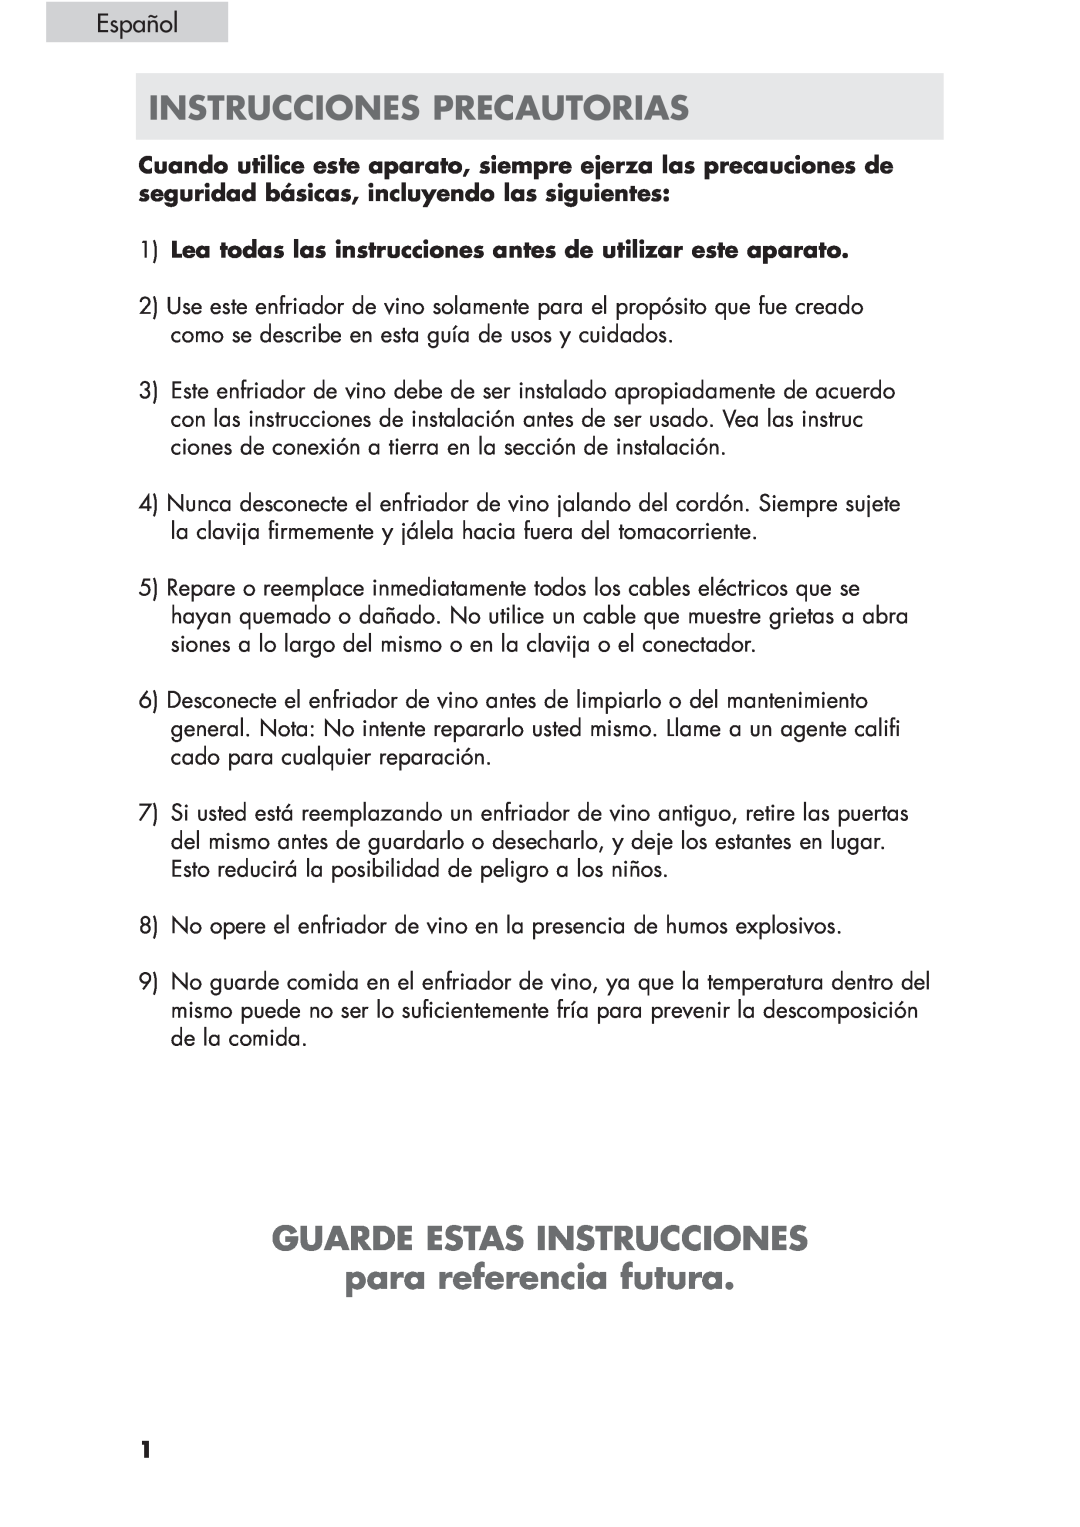 Haier HVCE24, HVCE15 user manual Instrucciones Precautorias, GUARDE ESTAS INSTRUCCIONES para referencia futura, Español 